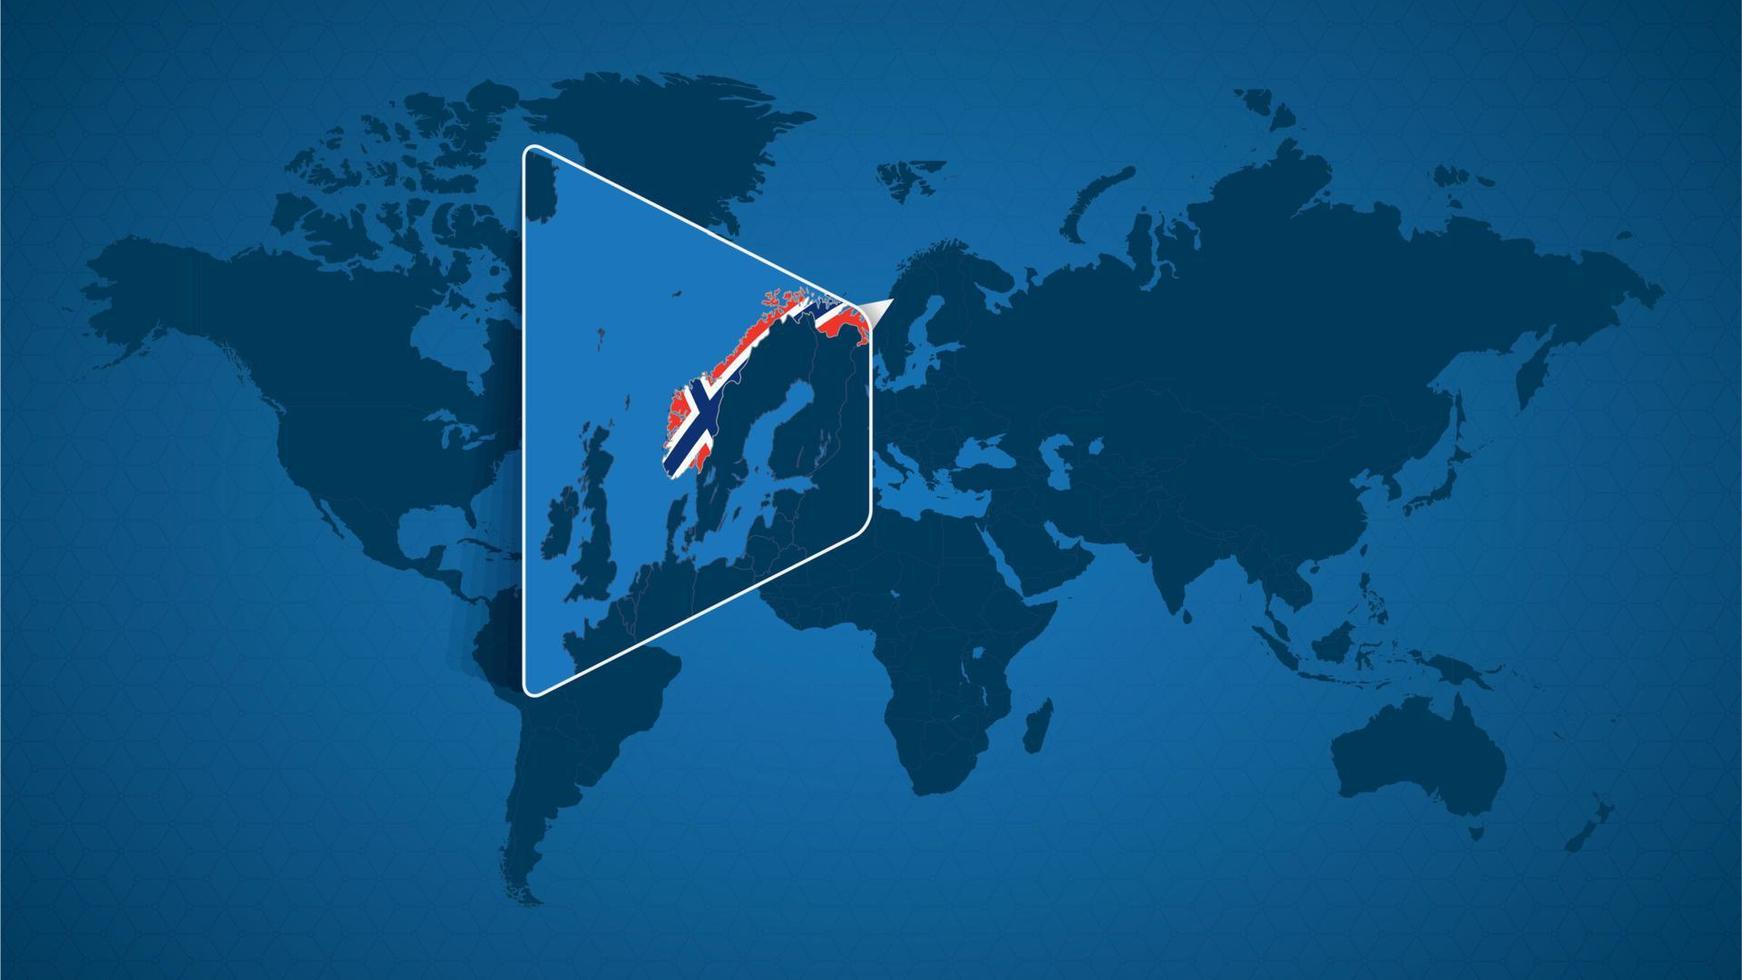 mappa del mondo dettagliata con mappa ingrandita appuntata della Norvegia e dei paesi limitrofi. vettore